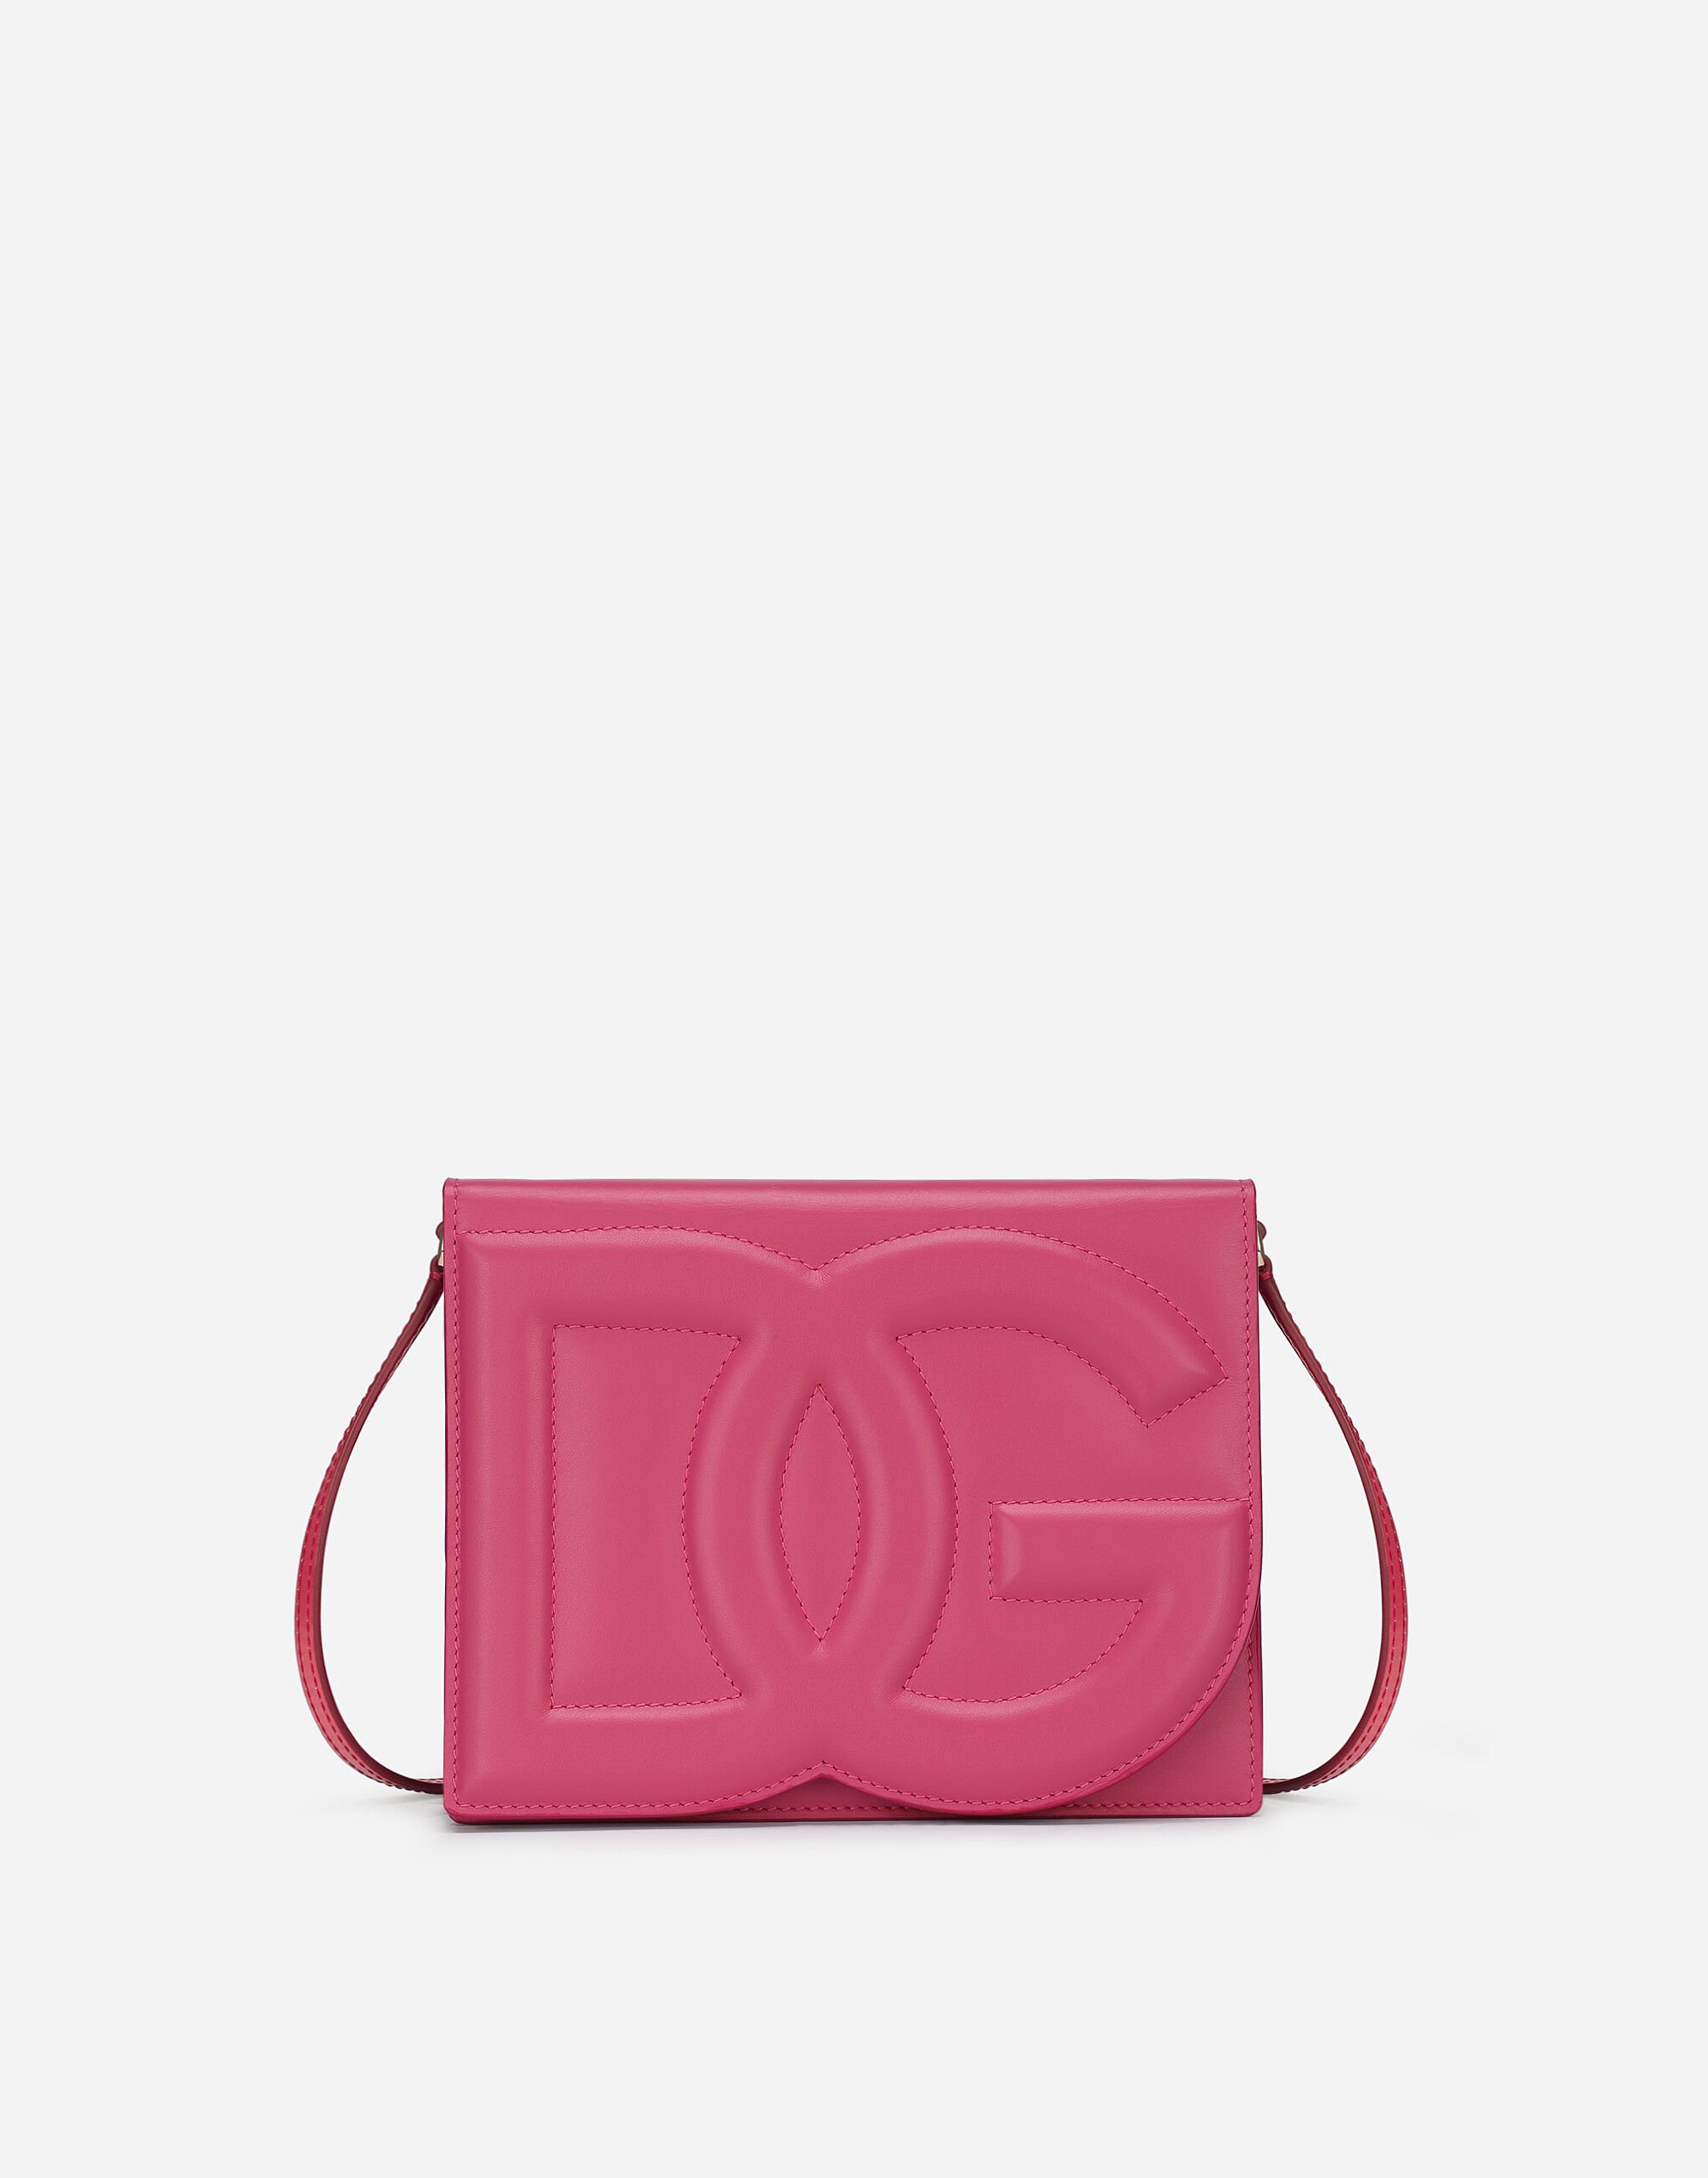 Dolce & Gabbana Calfskin DG Logo Bag crossbody bag Beige BB7657A4547